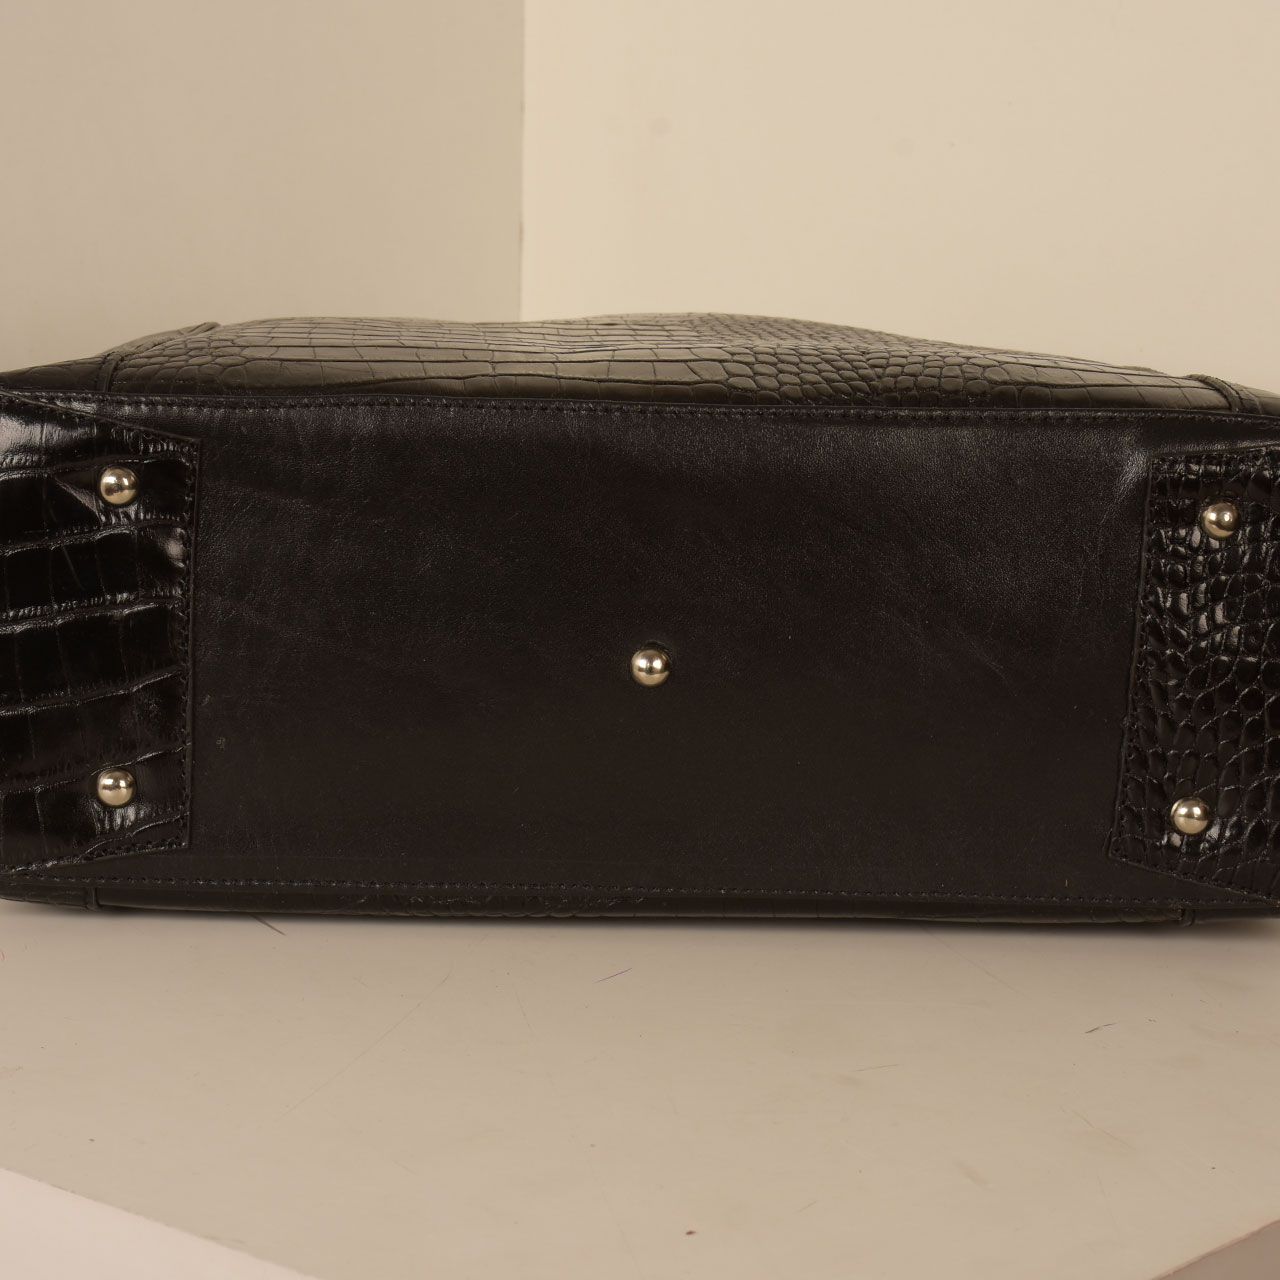  کیف دوشی زنانه پارینه چرم مدل V206-1 -  - 9